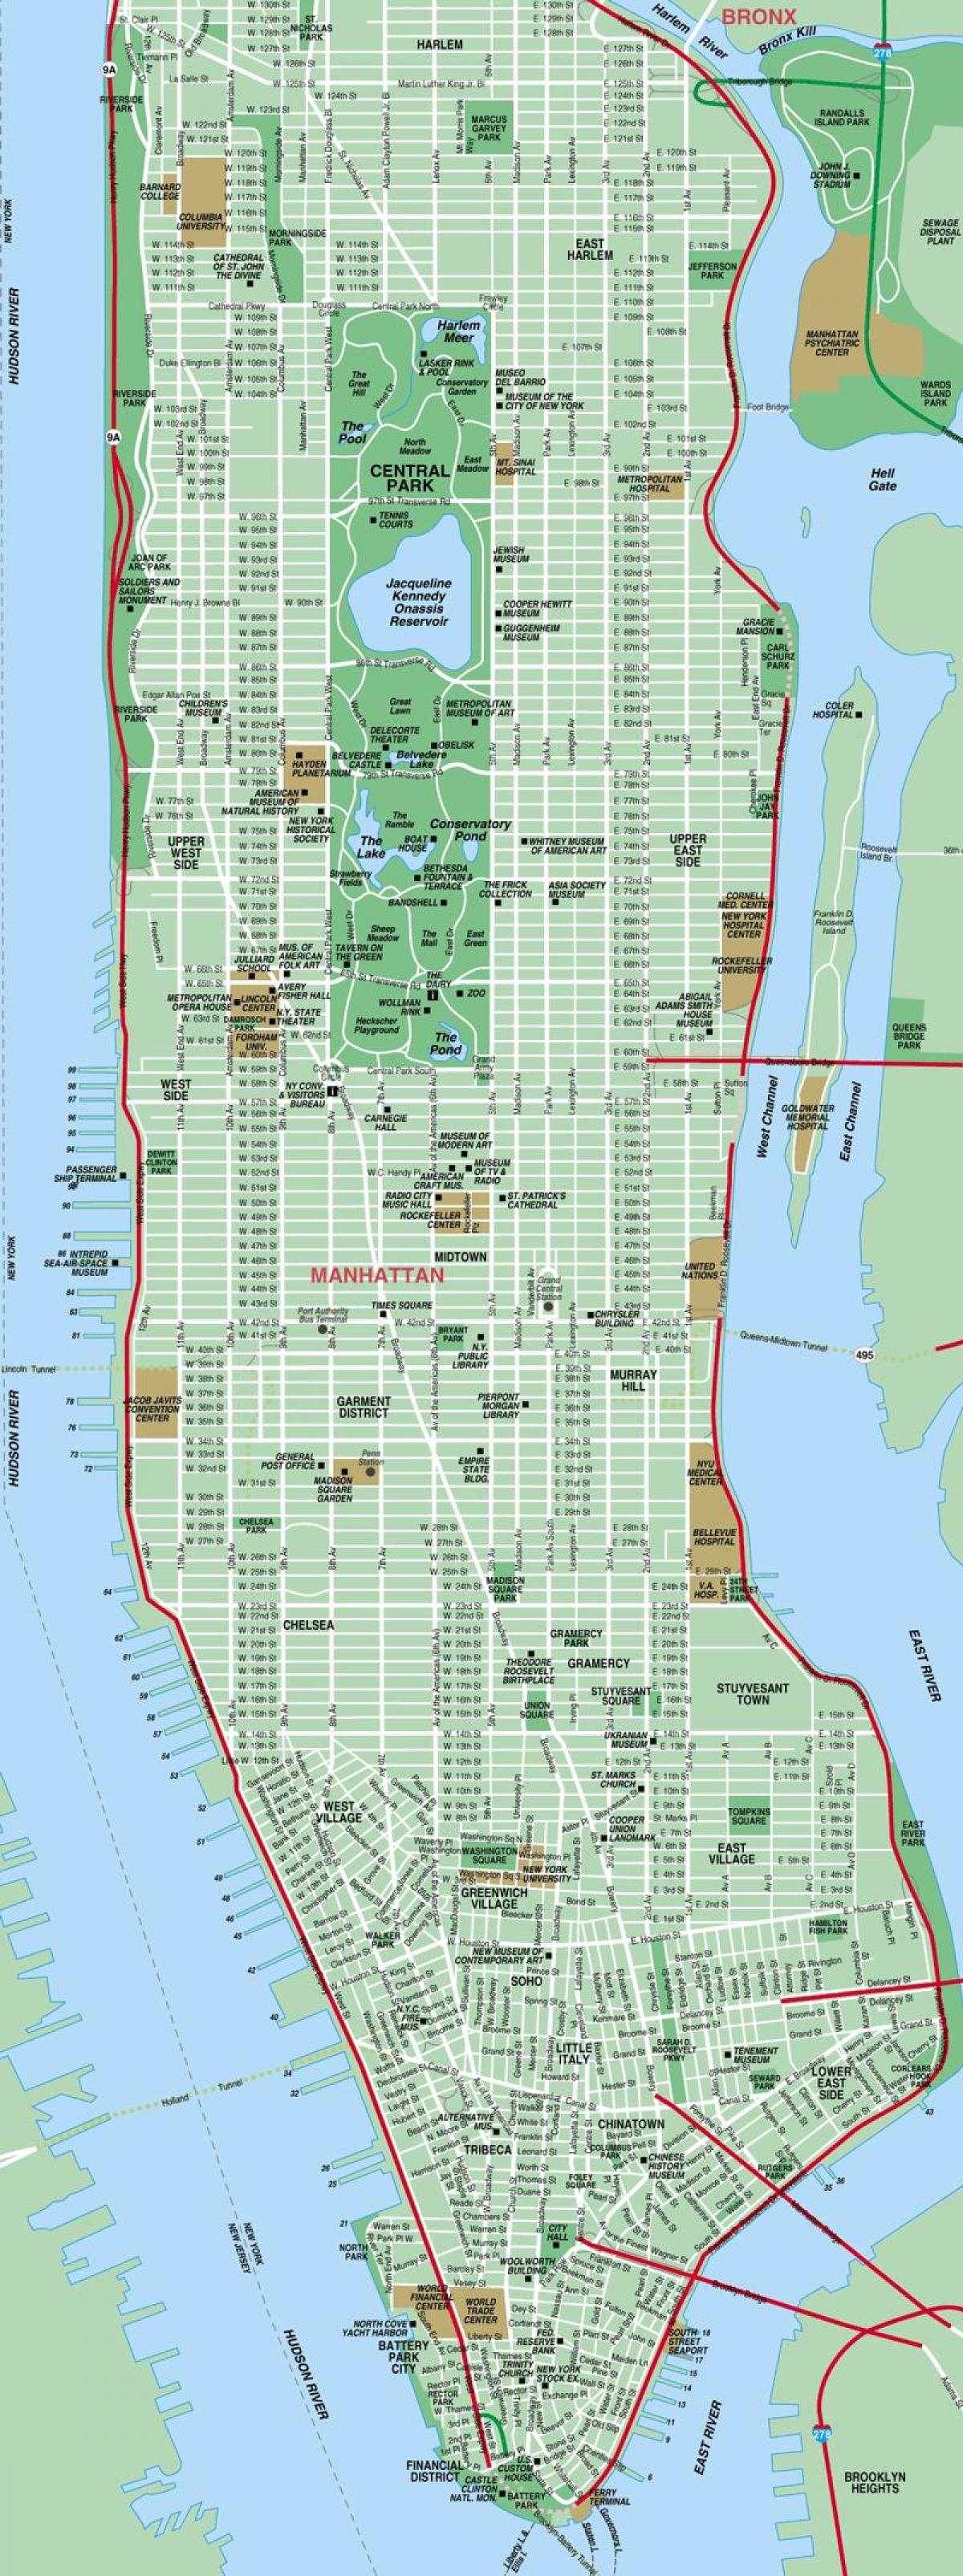 خريطة شارع مانهاتن في نيويورك